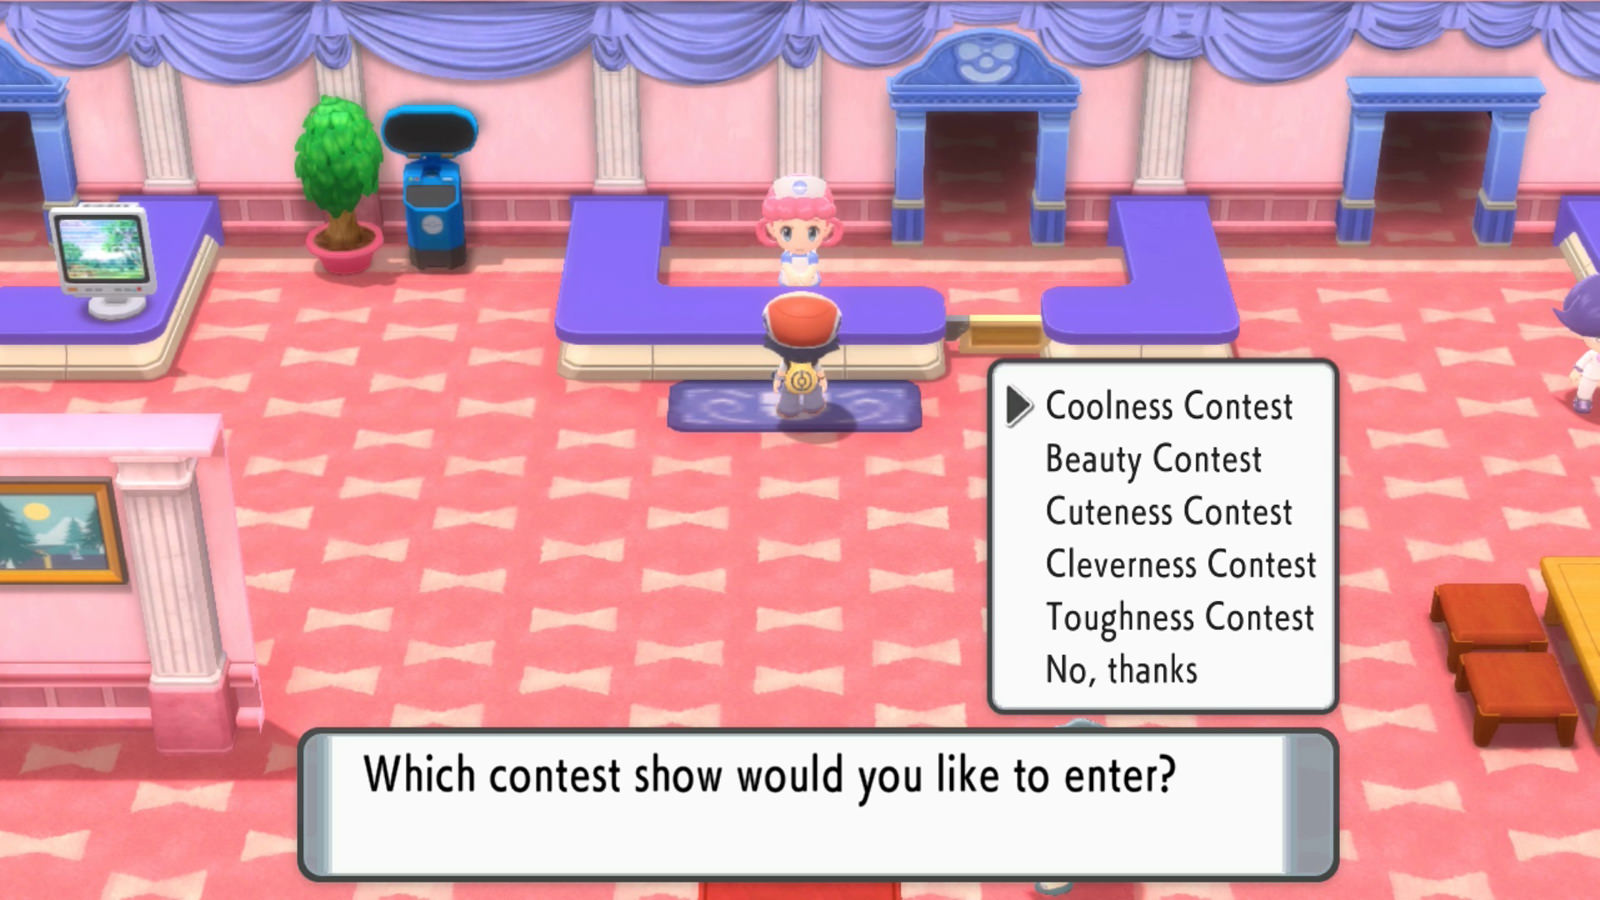 Pokémon: Brilliant Diamond & Shining Pearl - Como conectar o game